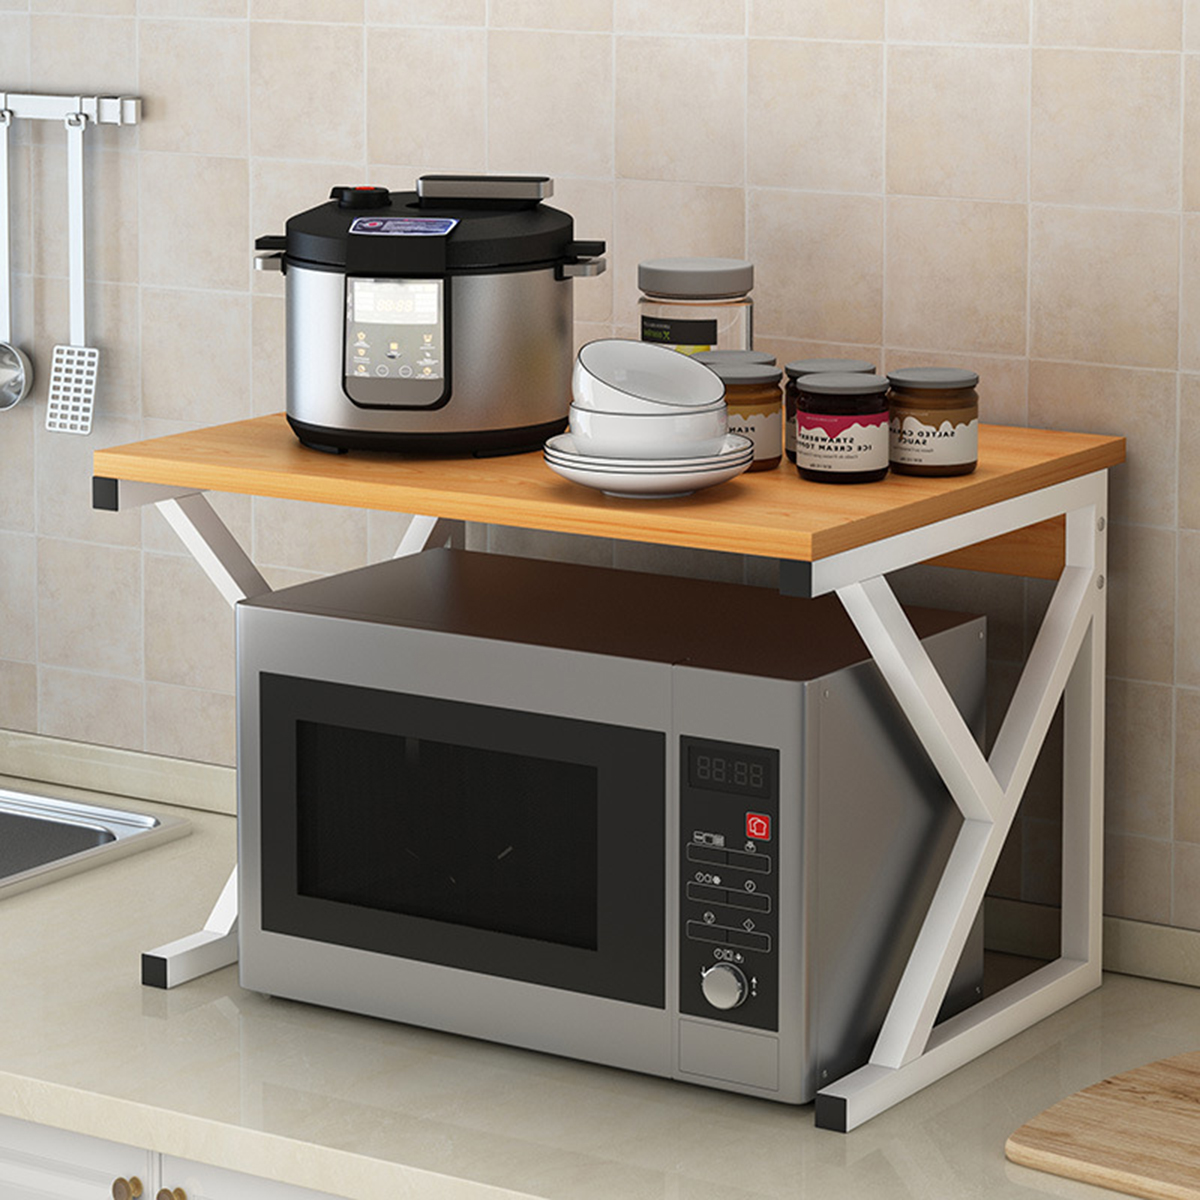 Microwave Oven Rack Kitchen Baker Stand Storage Shelf Kitchen Desktop Space Saving Organizer 65